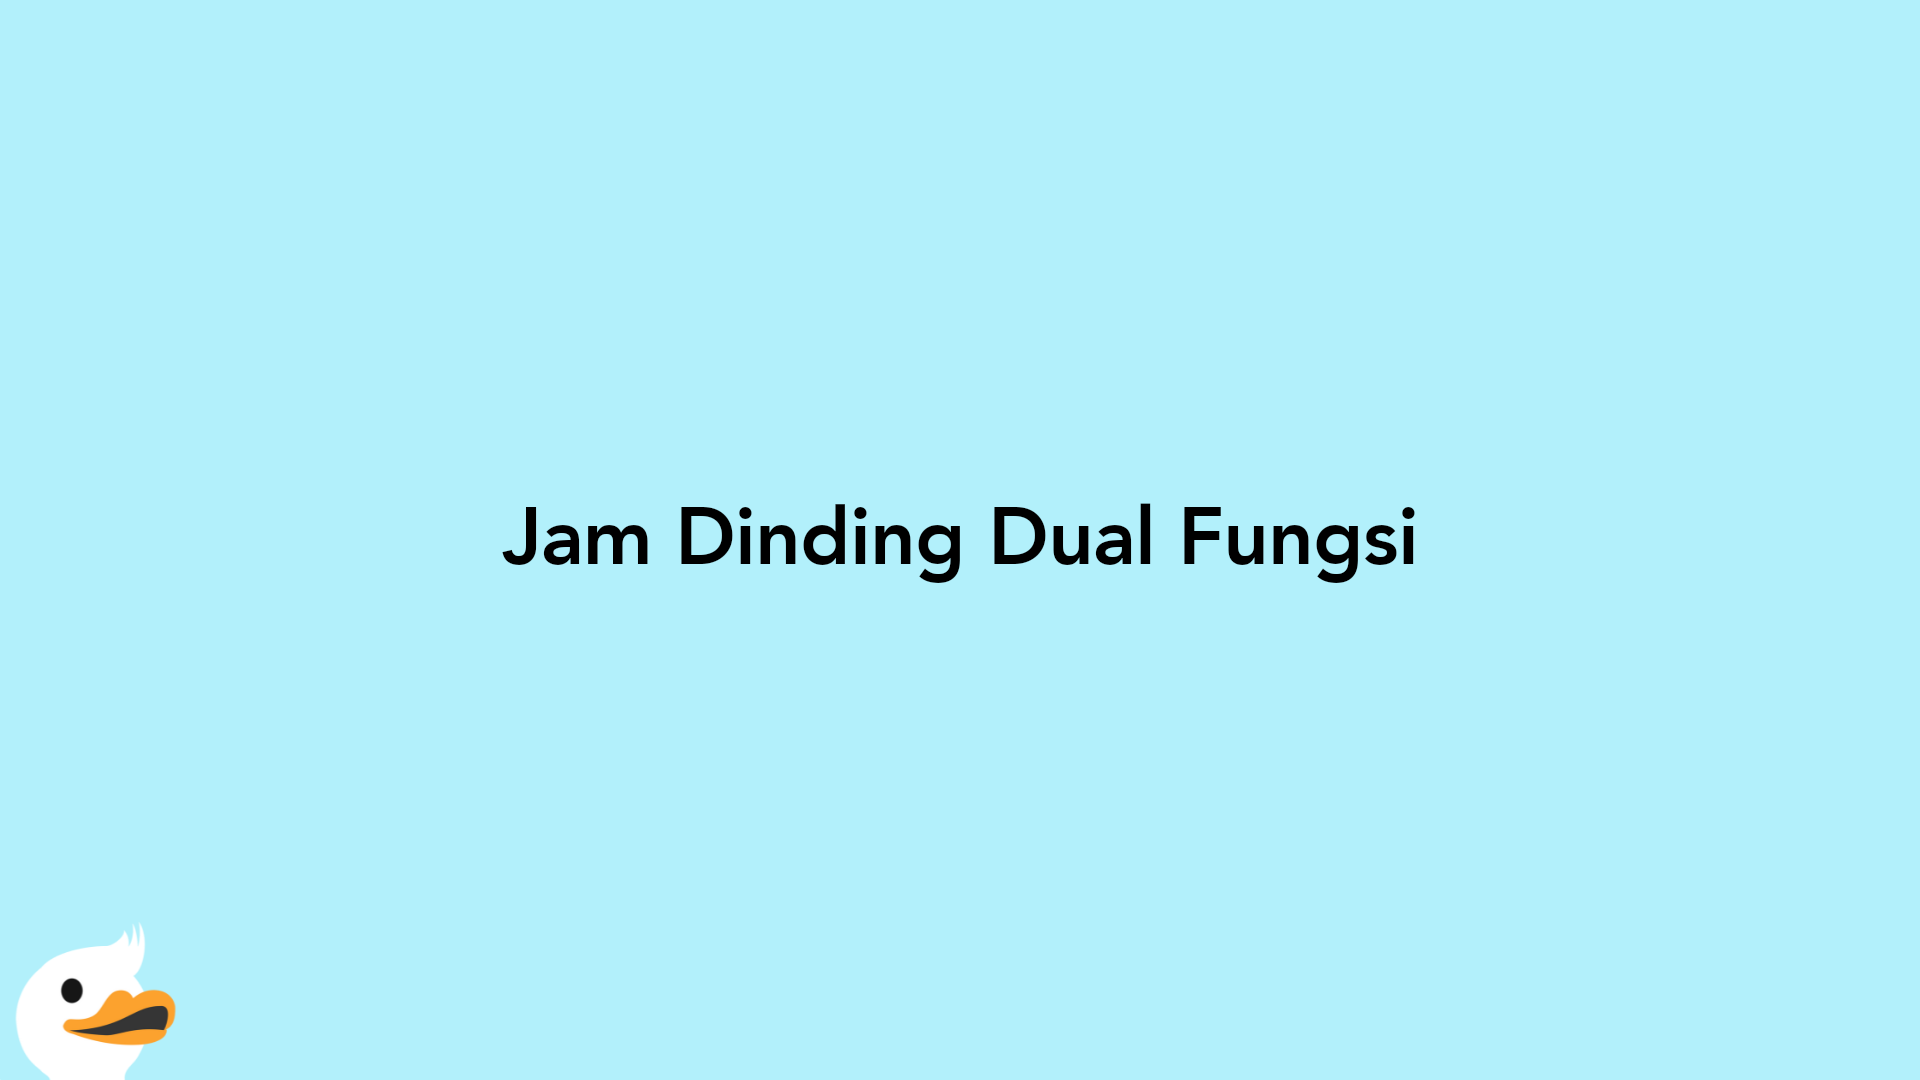 Jam Dinding Dual Fungsi